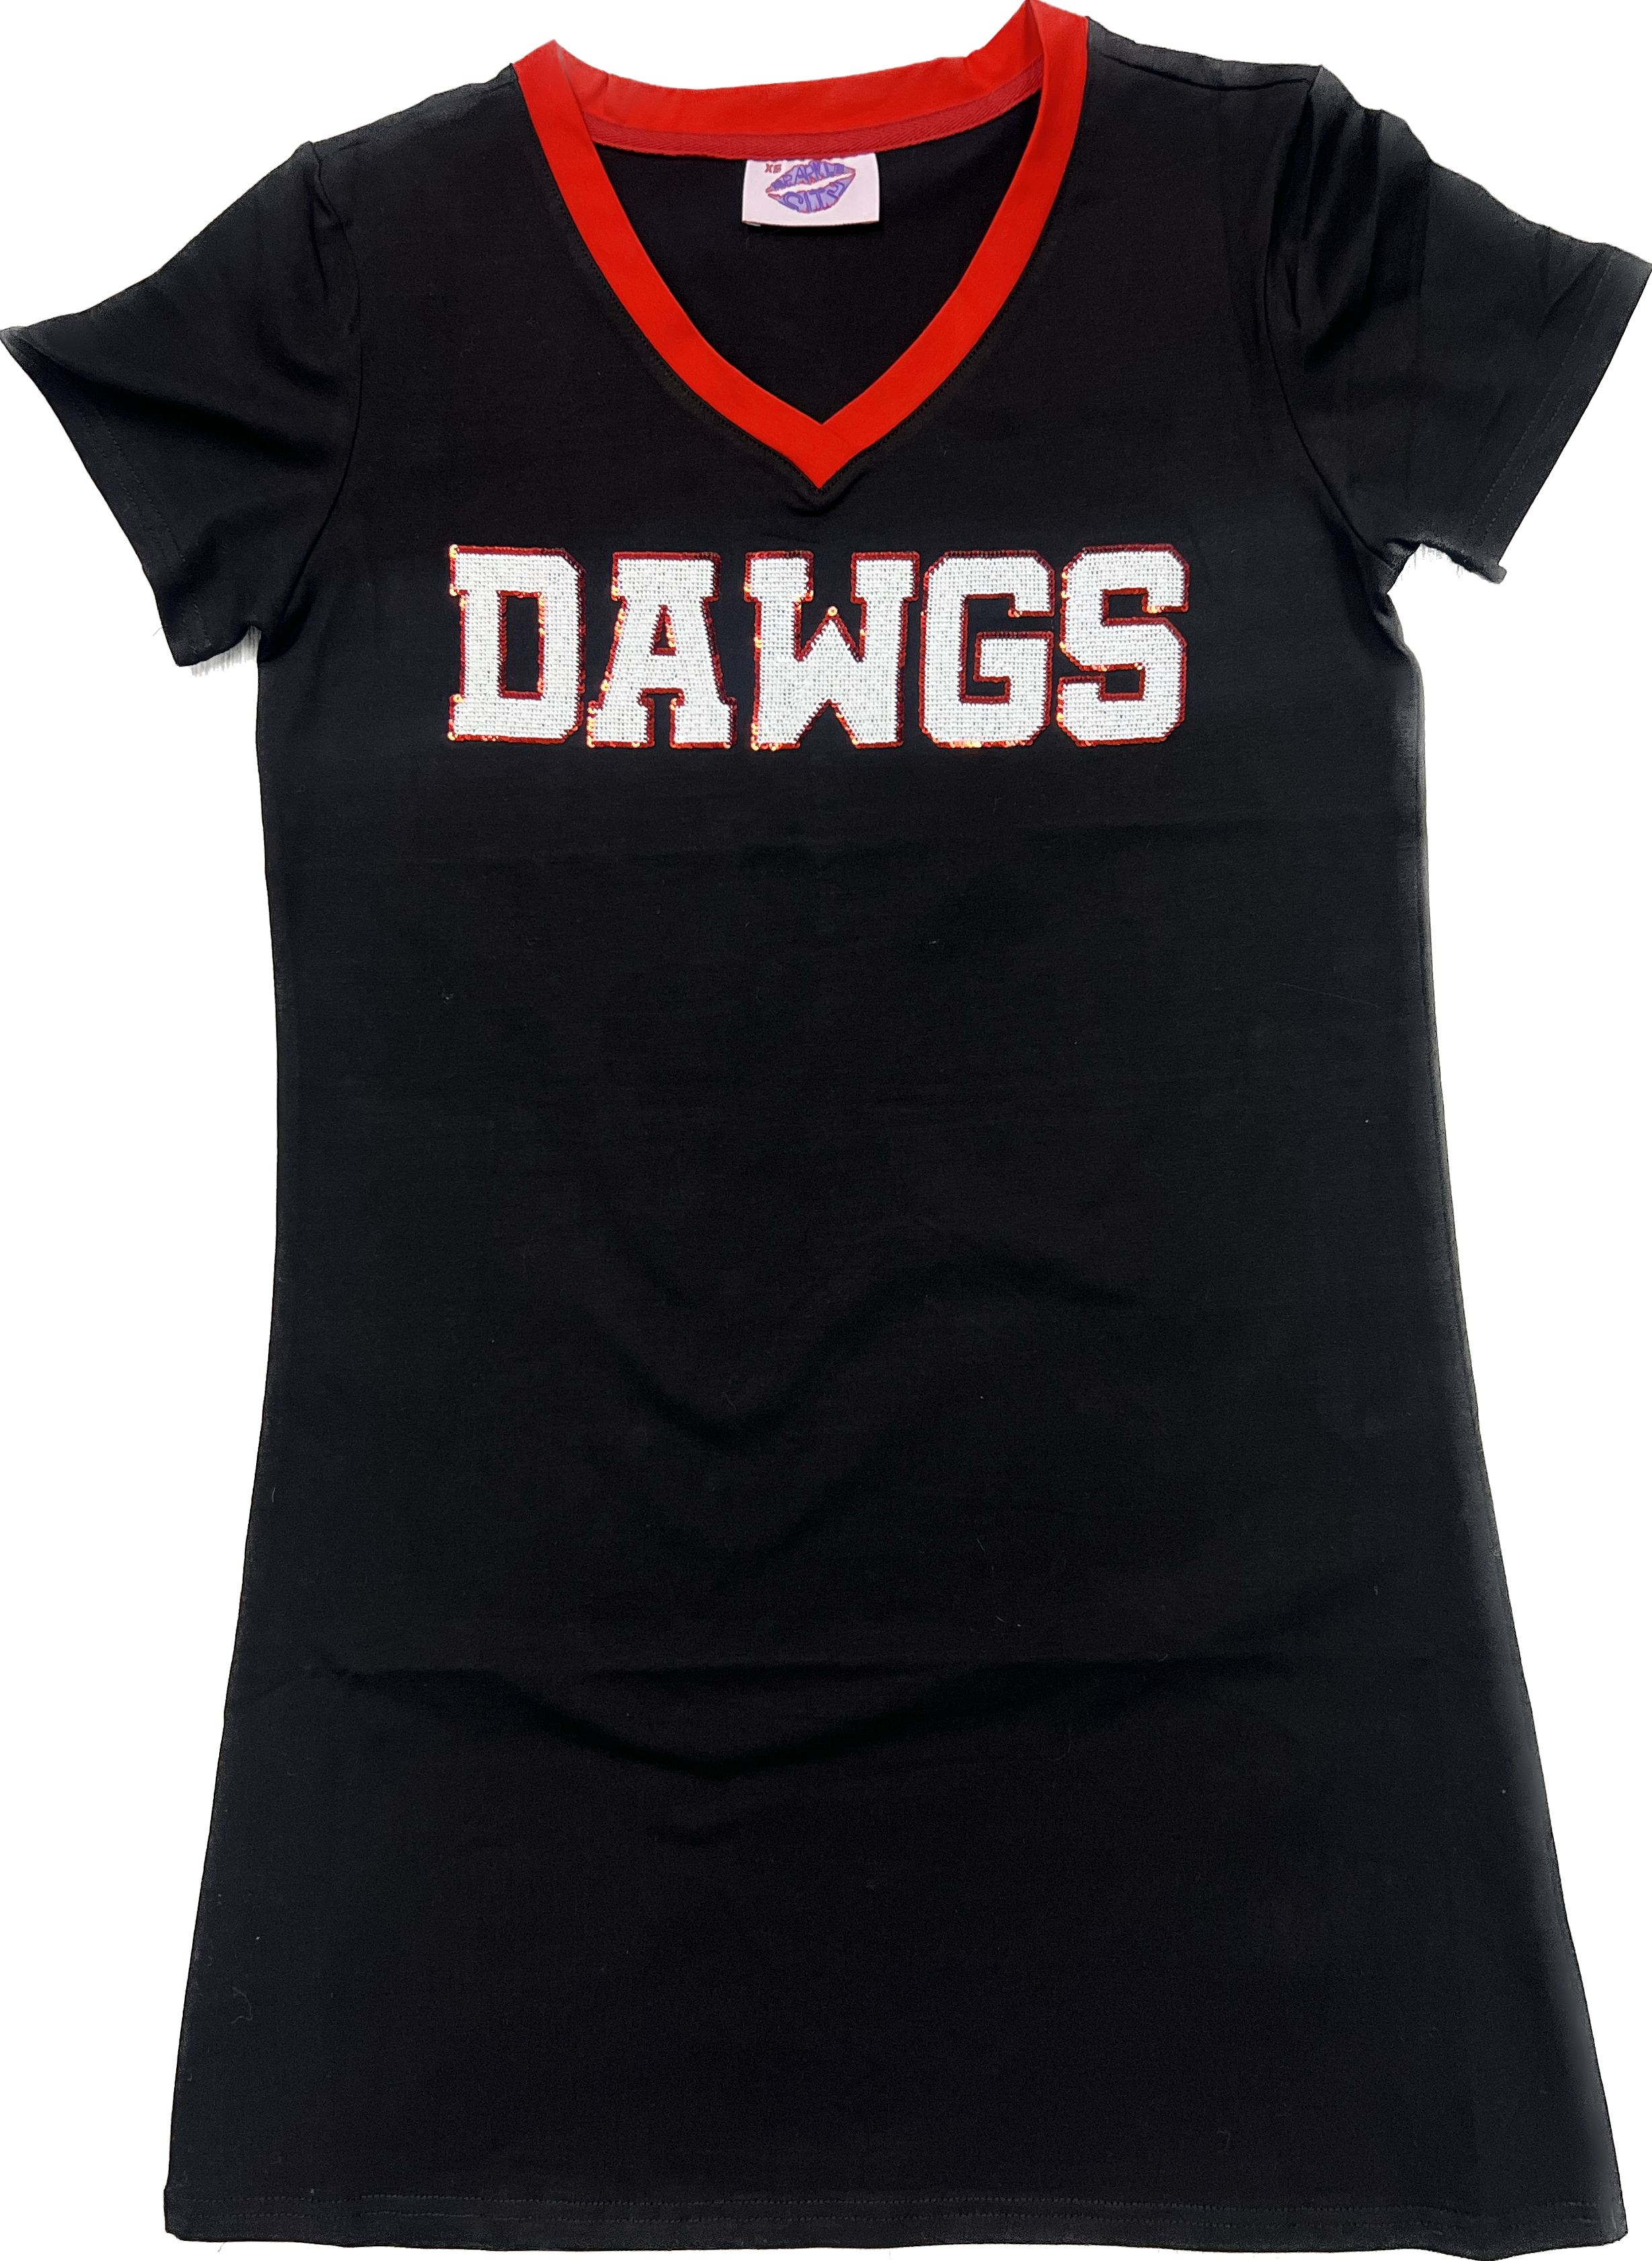 Dawgs Jersey Dress